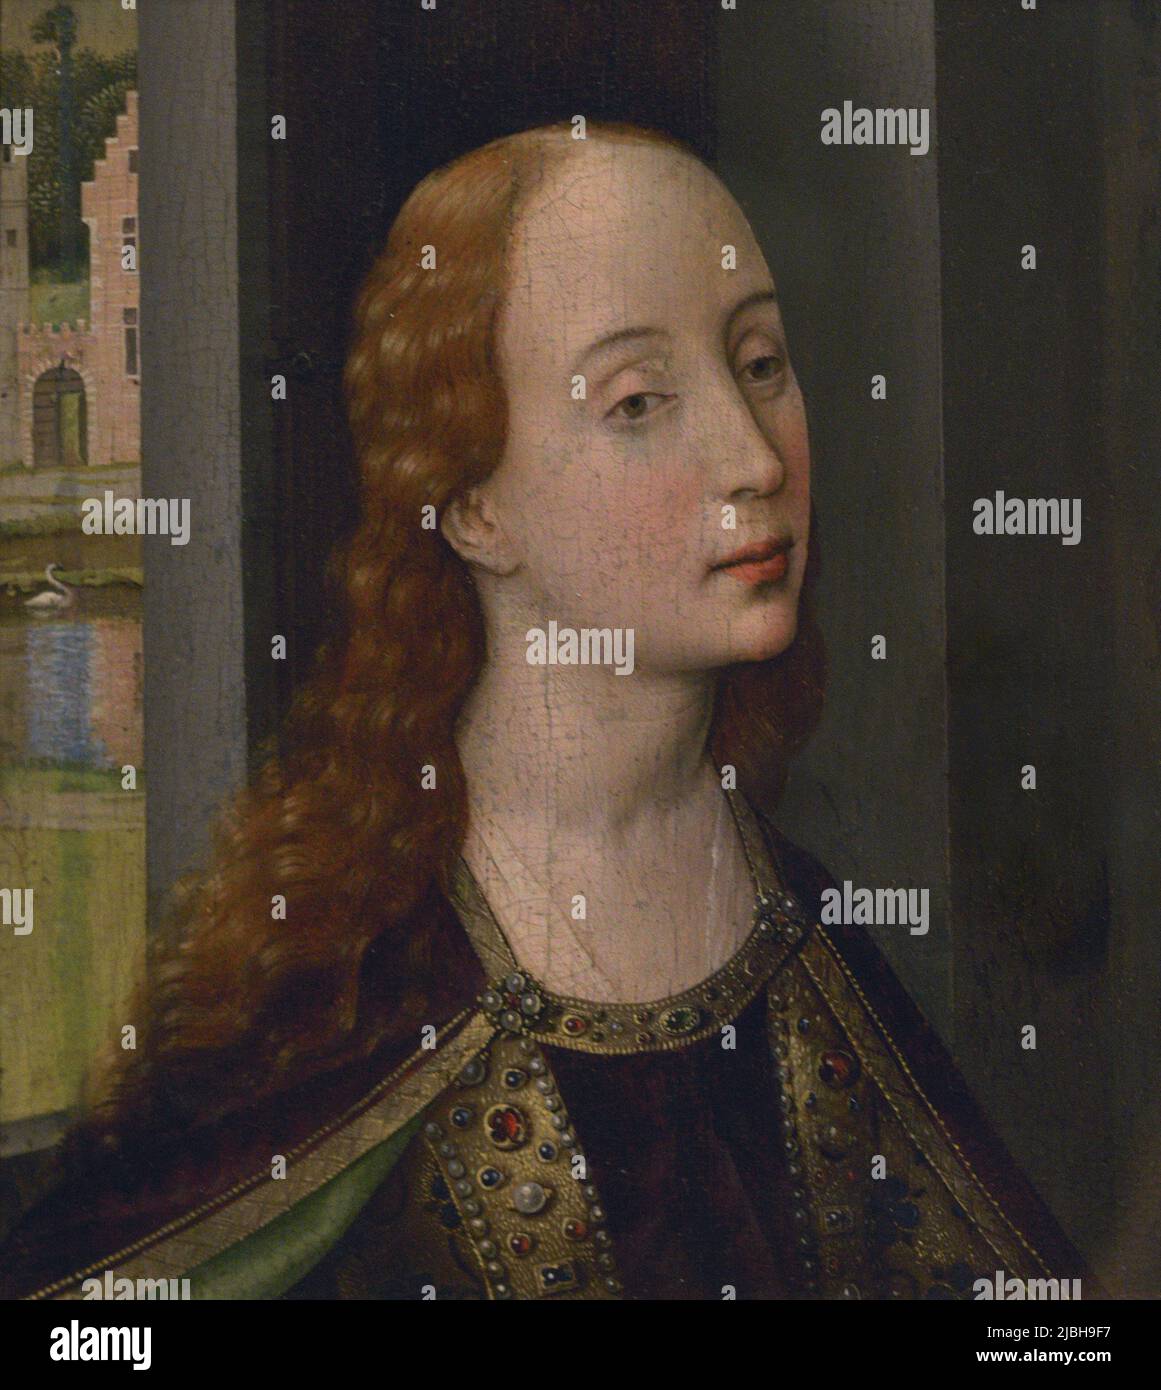 Rogier van der Weyden (1399-1464). Peintre flamand. Sainte-Catherine (?), ca. 1435-1437. Tempera et huile sur bois. Musée Calouste Gulbenkian. Lisbonne, Portugal. Banque D'Images